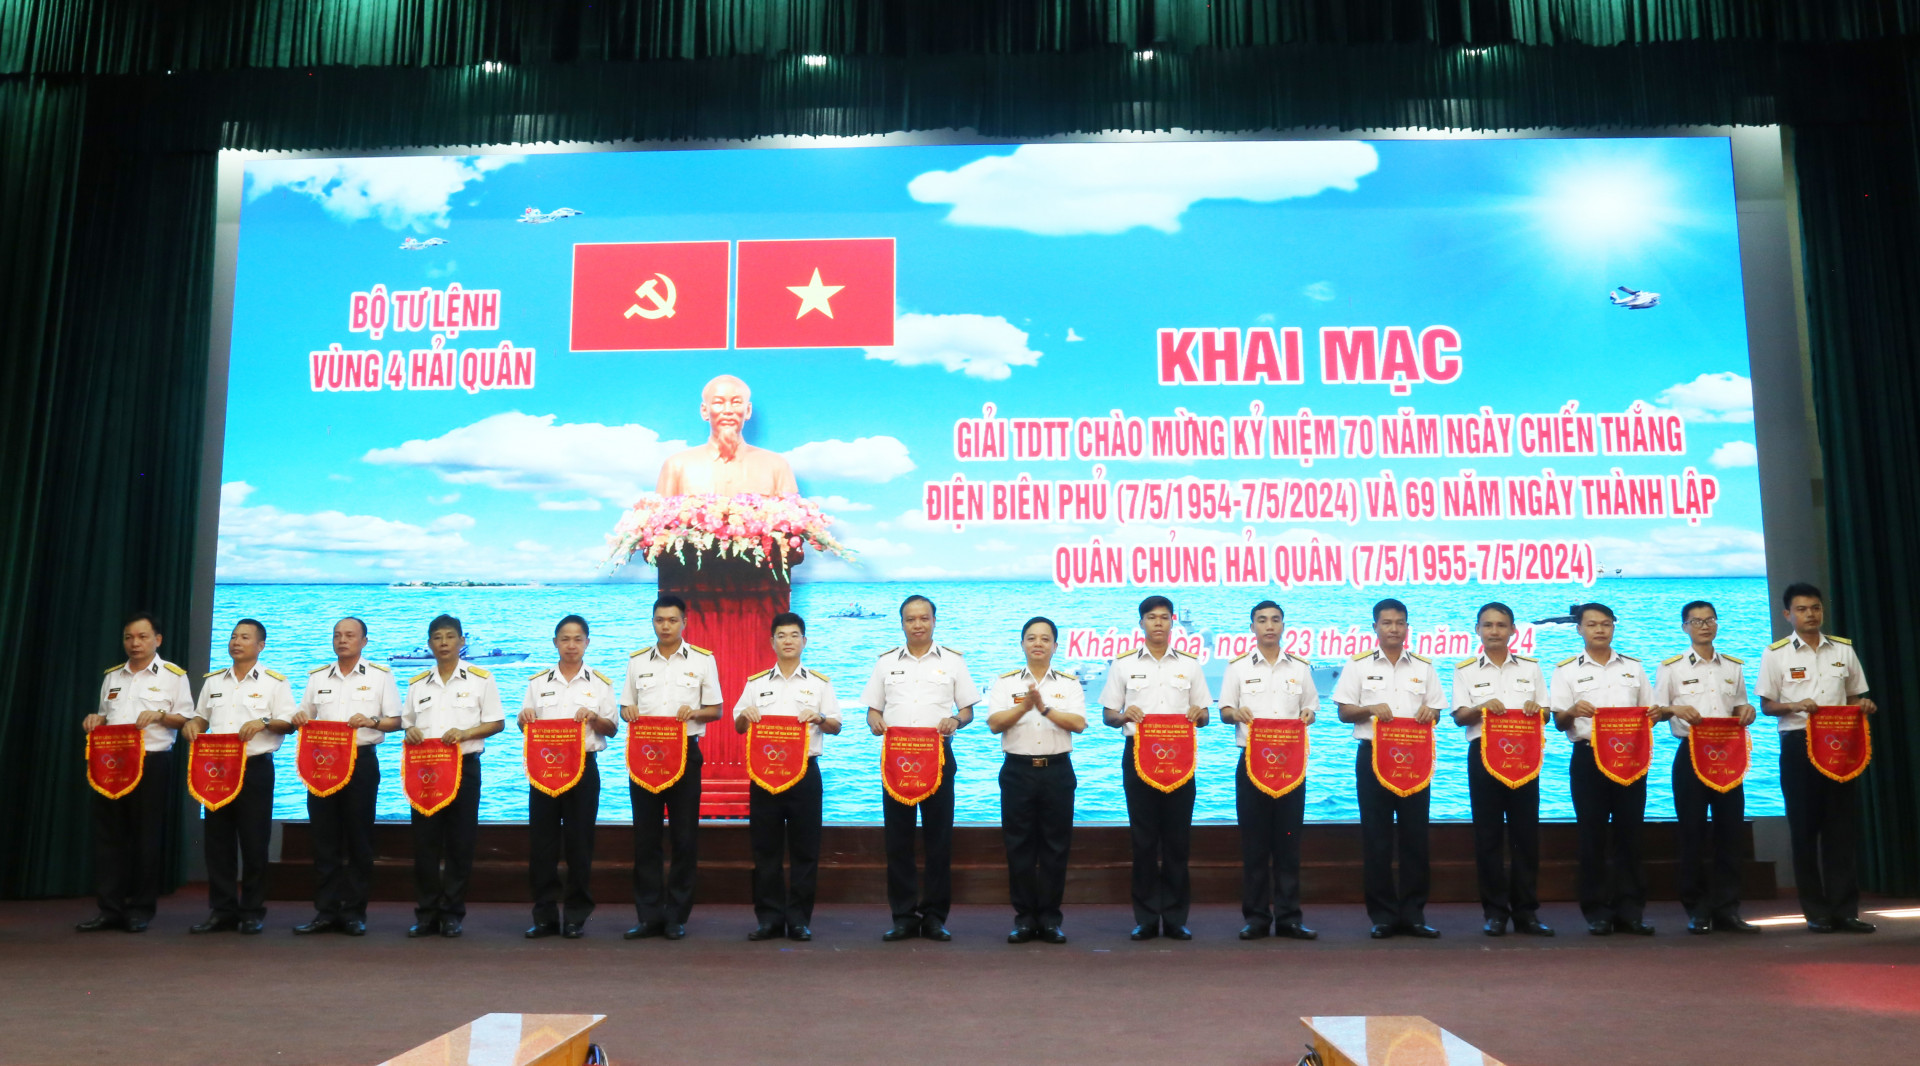 Ban tổ chức tặng cờ lưu niệm cho các đơn vị.

